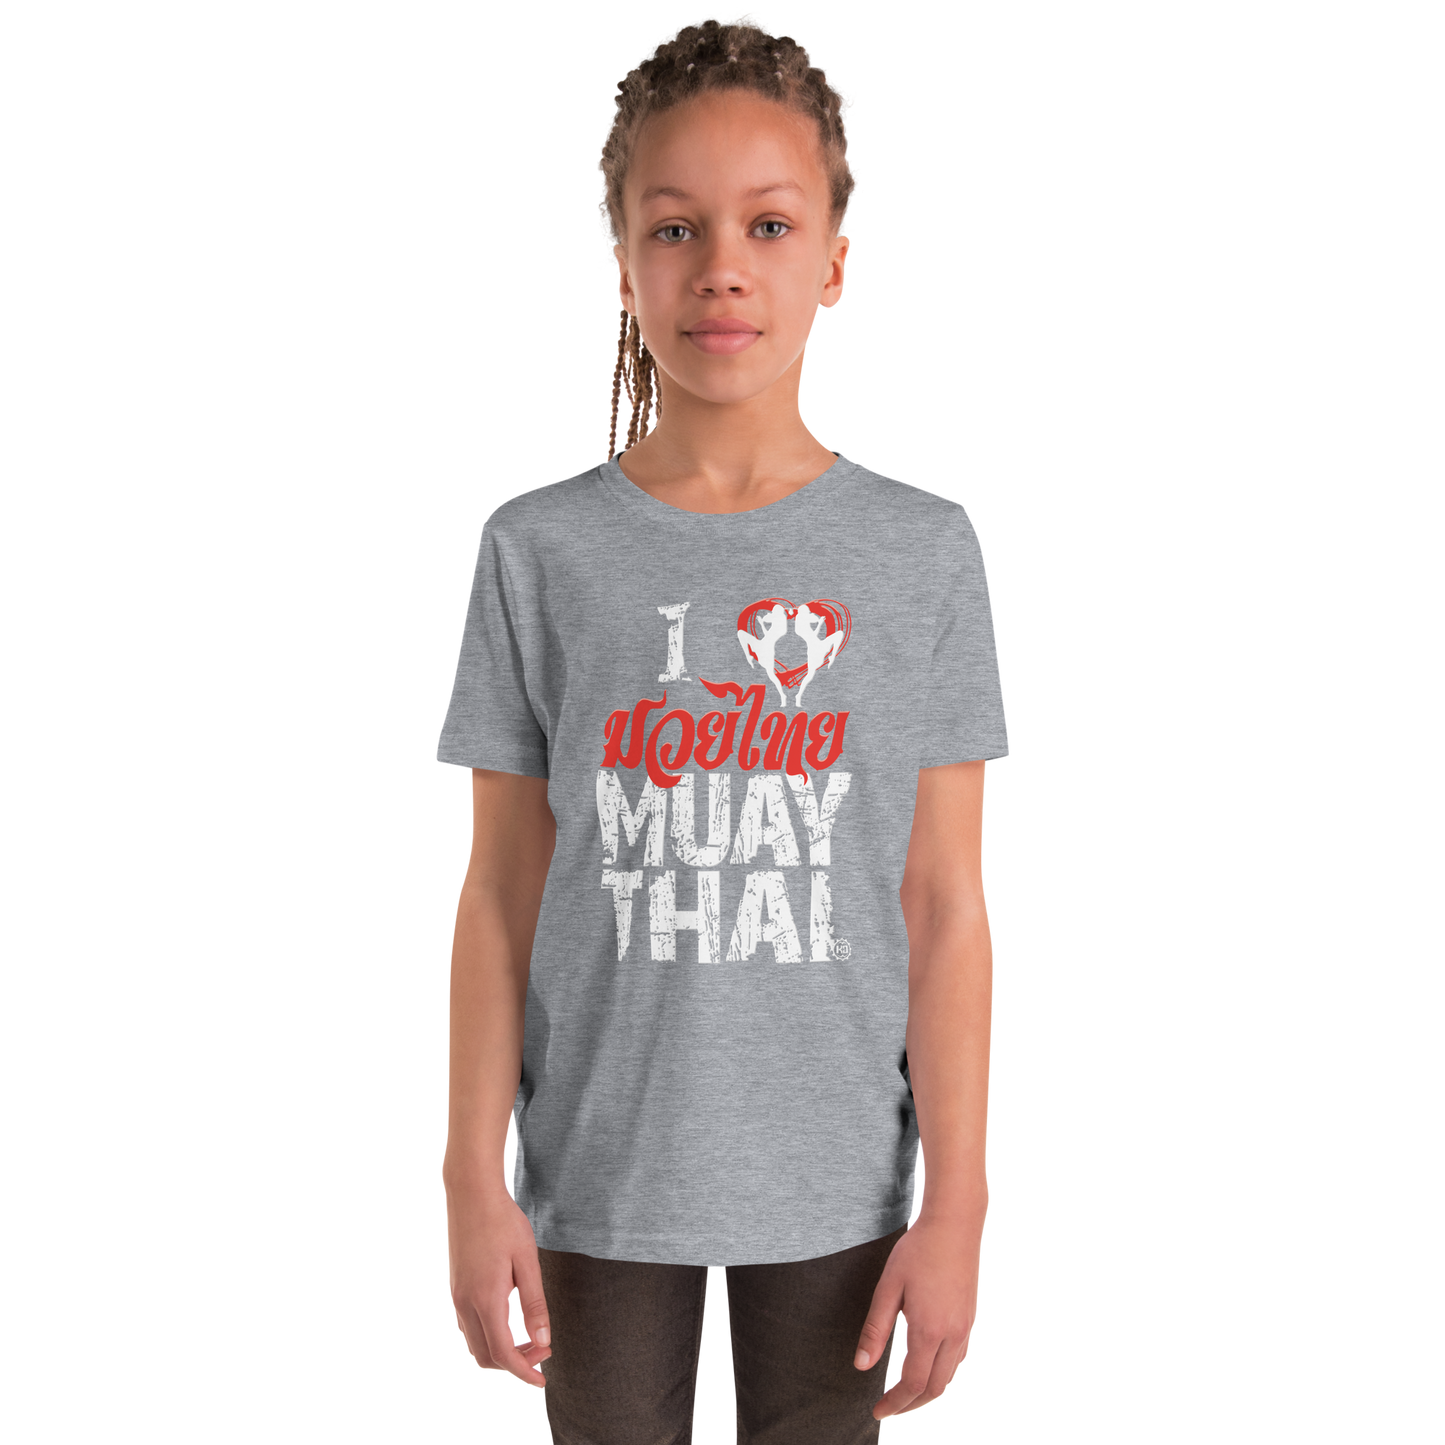 Youth Girl Cotton T-Shirt Ko Machine I Love Muay Thai